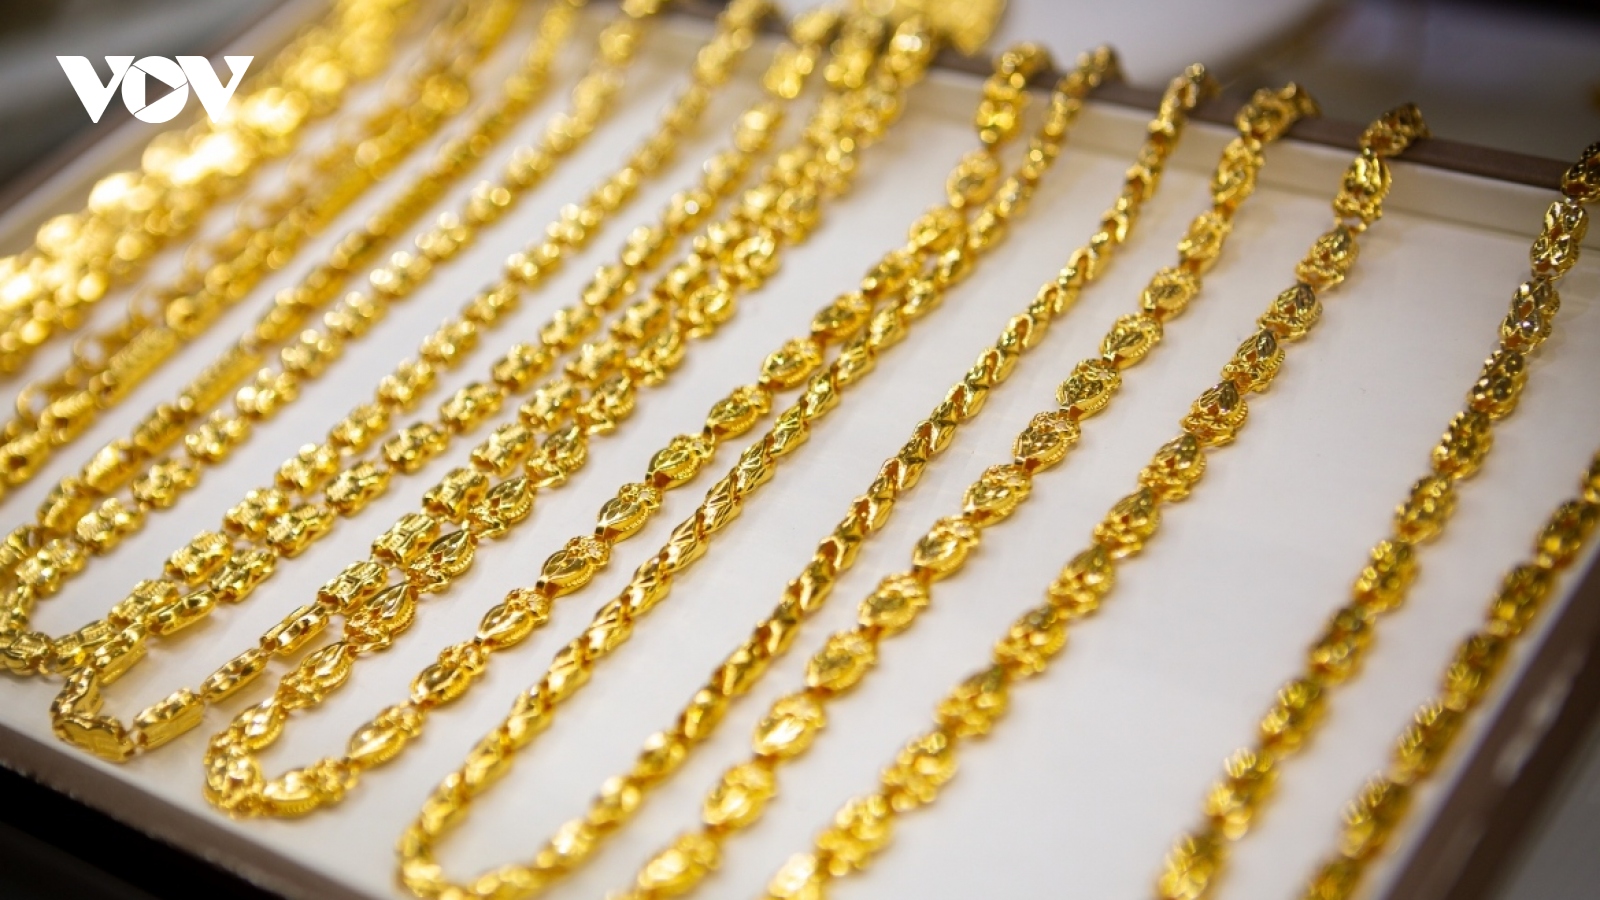 Giá vàng hôm nay 2/12: Giá vàng SJC tăng vọt lên 74 triệu đồng/lượng